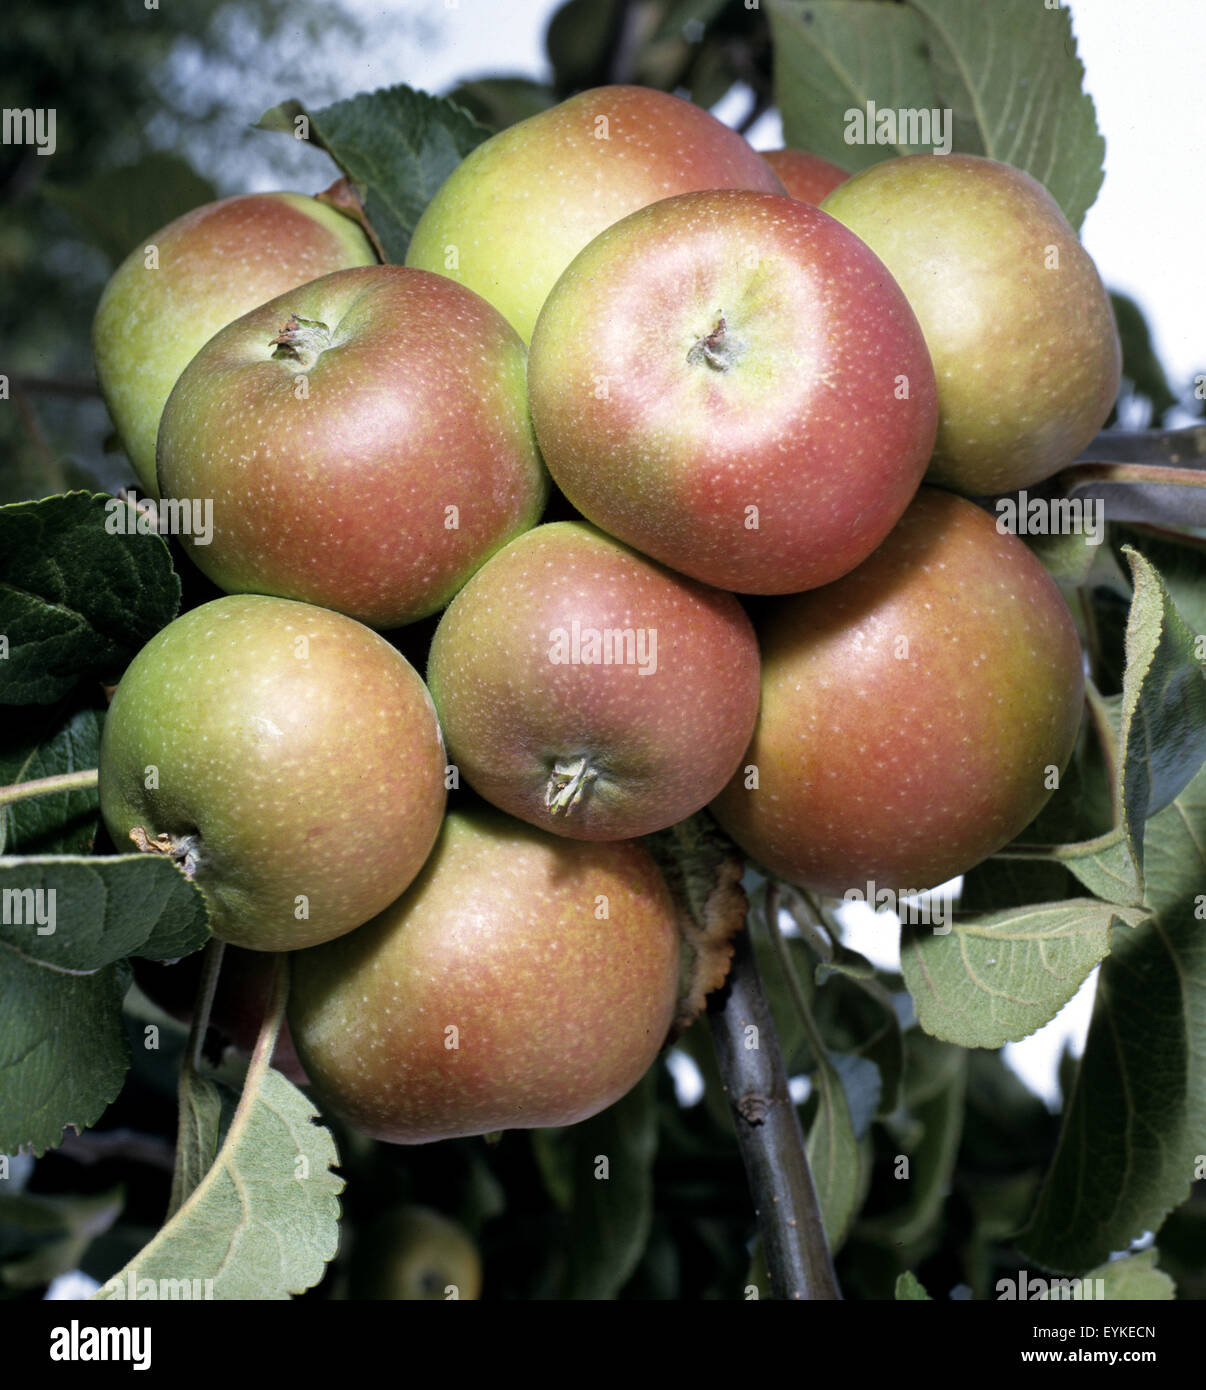 Apfel, Berlepsch, Apfelsorte, Apfel, Kernobst, Obst, Stock Photo